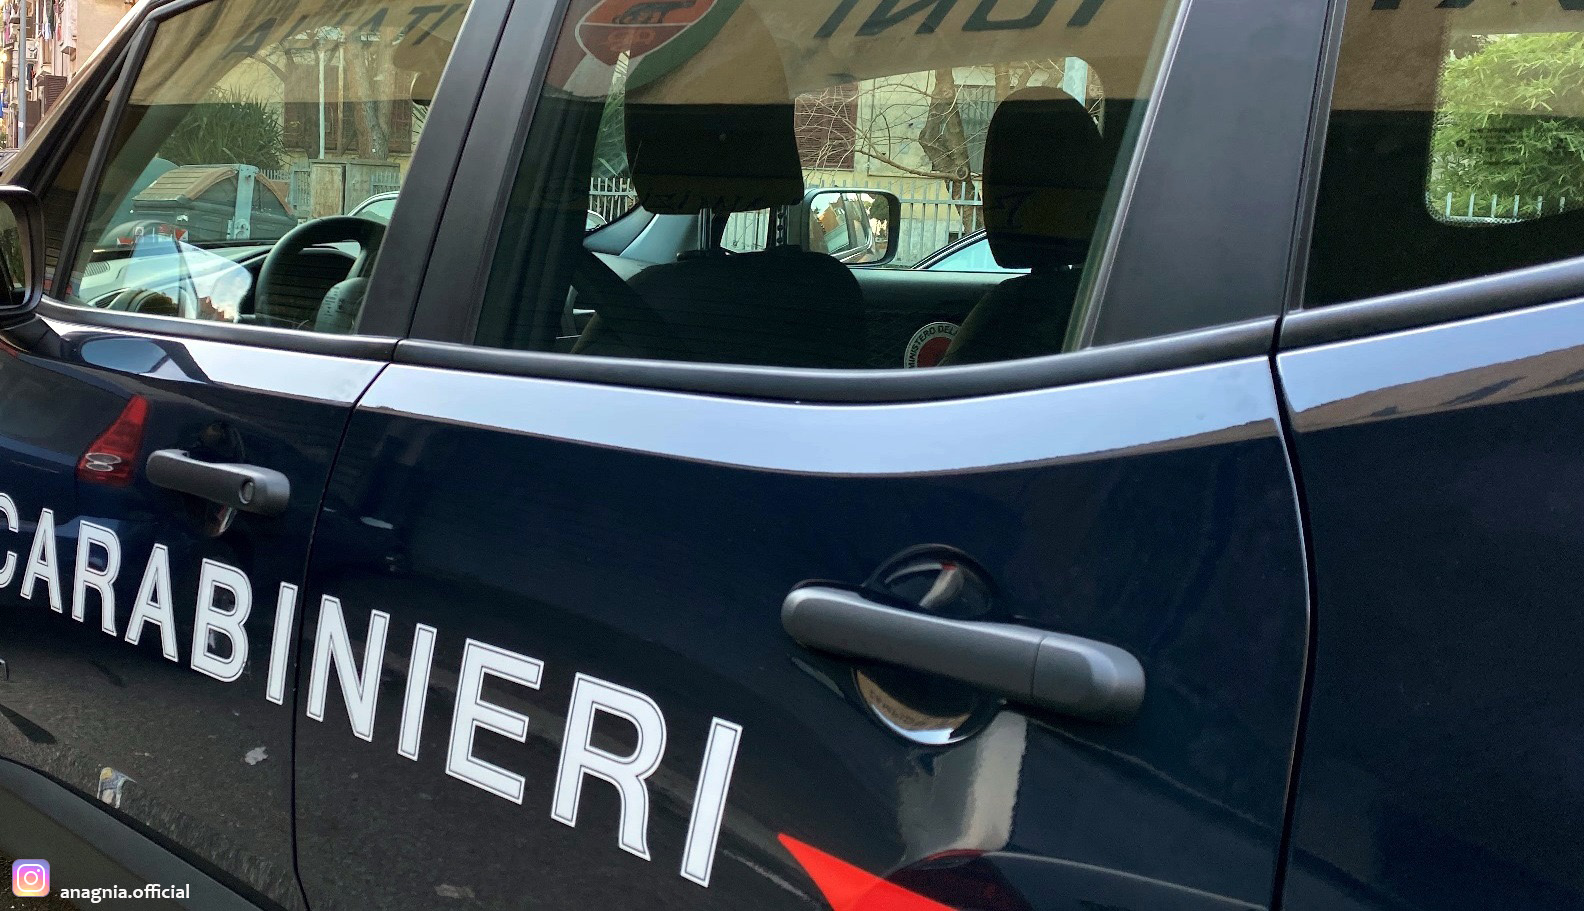 Carabinieri in azione sul territorio della provincia di Frosinone - Anagnia